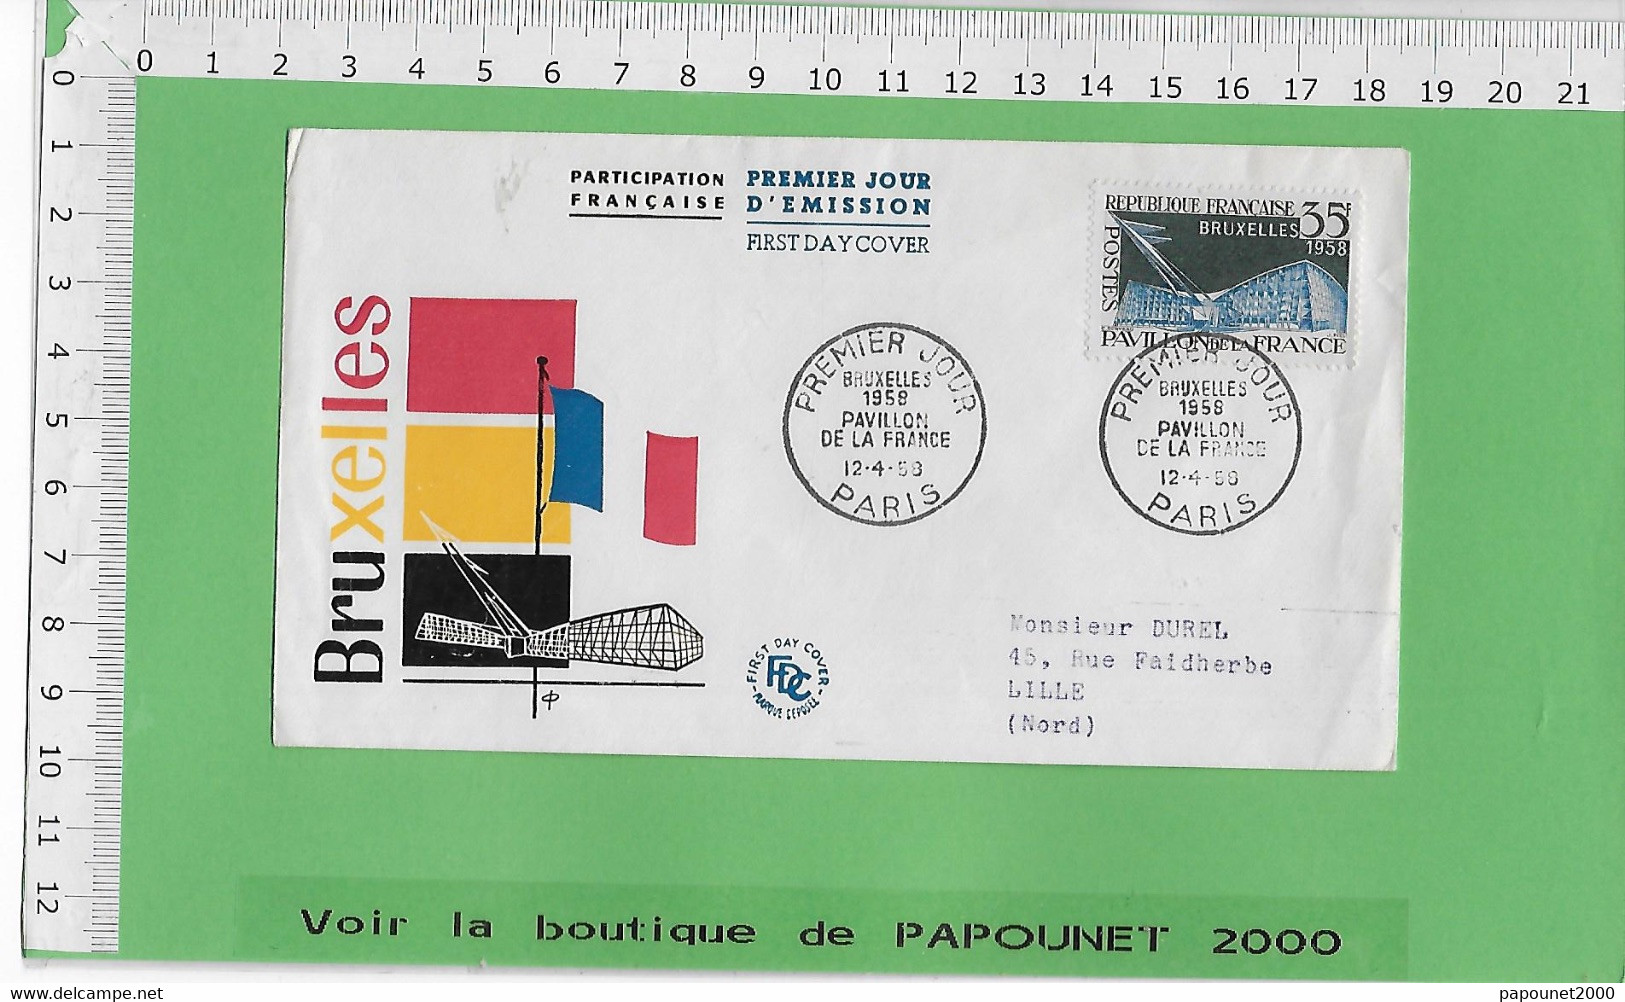 02576 - E BE04 1000-EXPO 58 : Timbre*Enveloppe /PREMIER JOUR D EMISSION : PAVILLON FRANCAIS - 1958 – Brussels (Belgium)